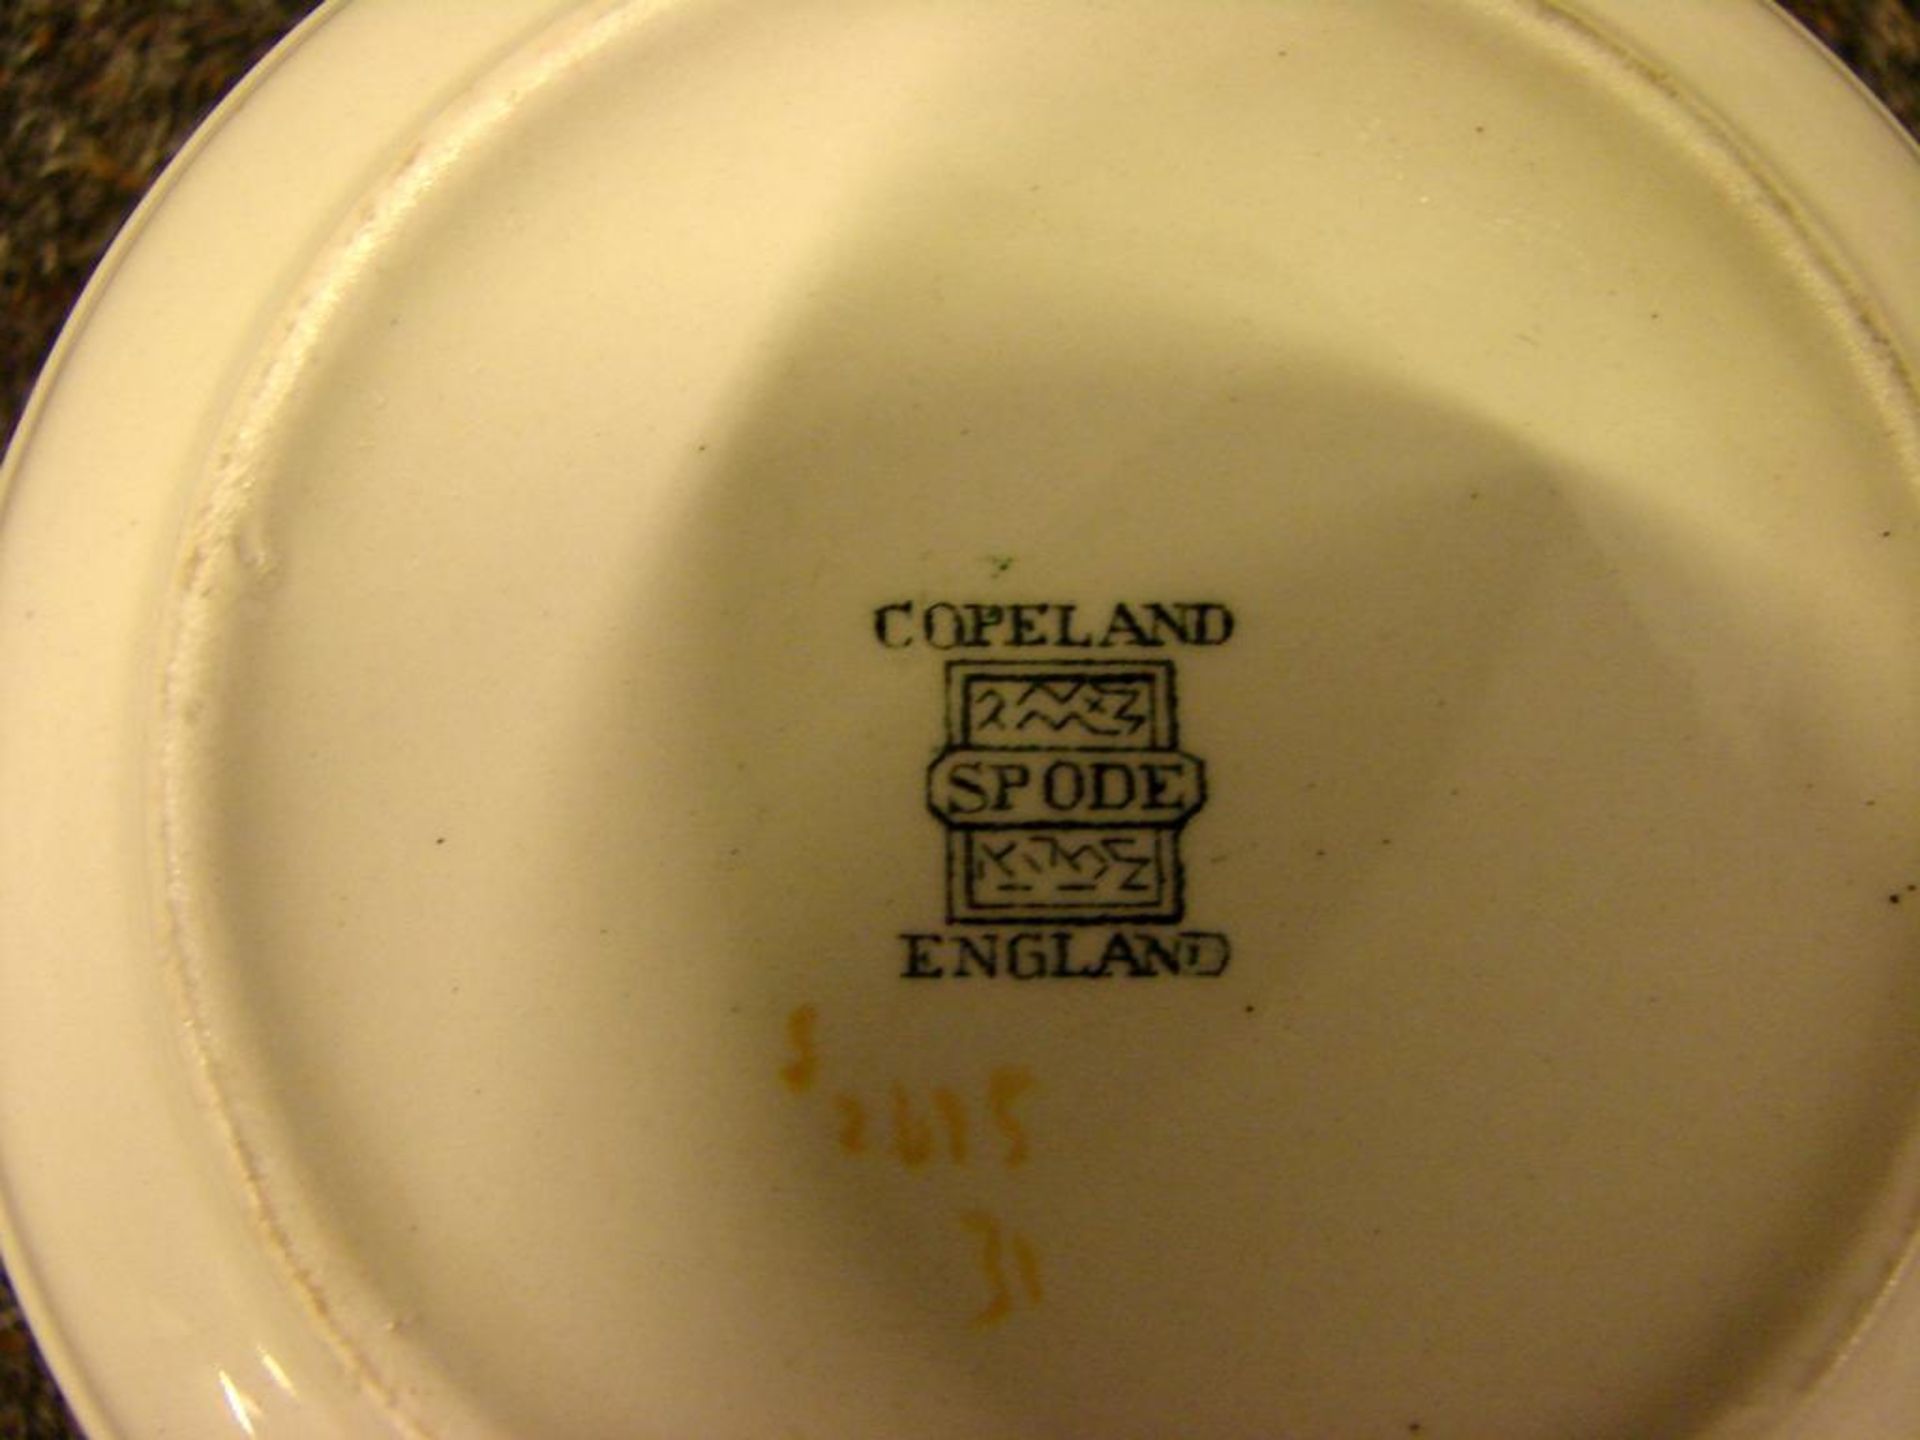 Geschirr, Copeland "Spode", England, insgesamt 79 Teile: 1 Tee/Kaffeekanne, 2 Milchkännchen, 12 - Bild 3 aus 3